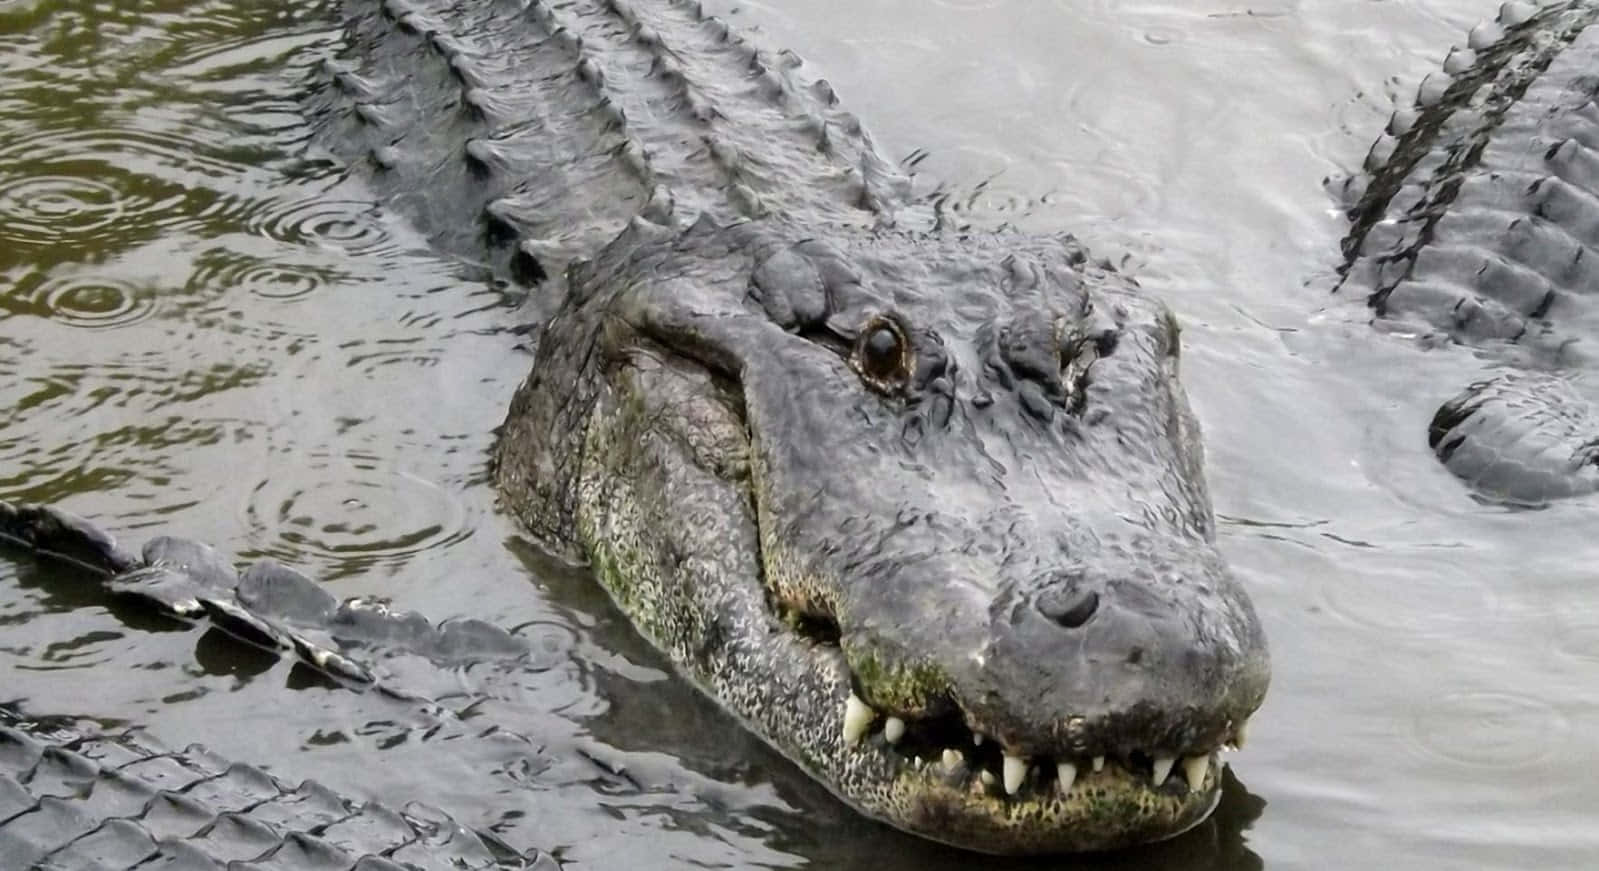 Närbildpå En Alligator I Det Vilda.